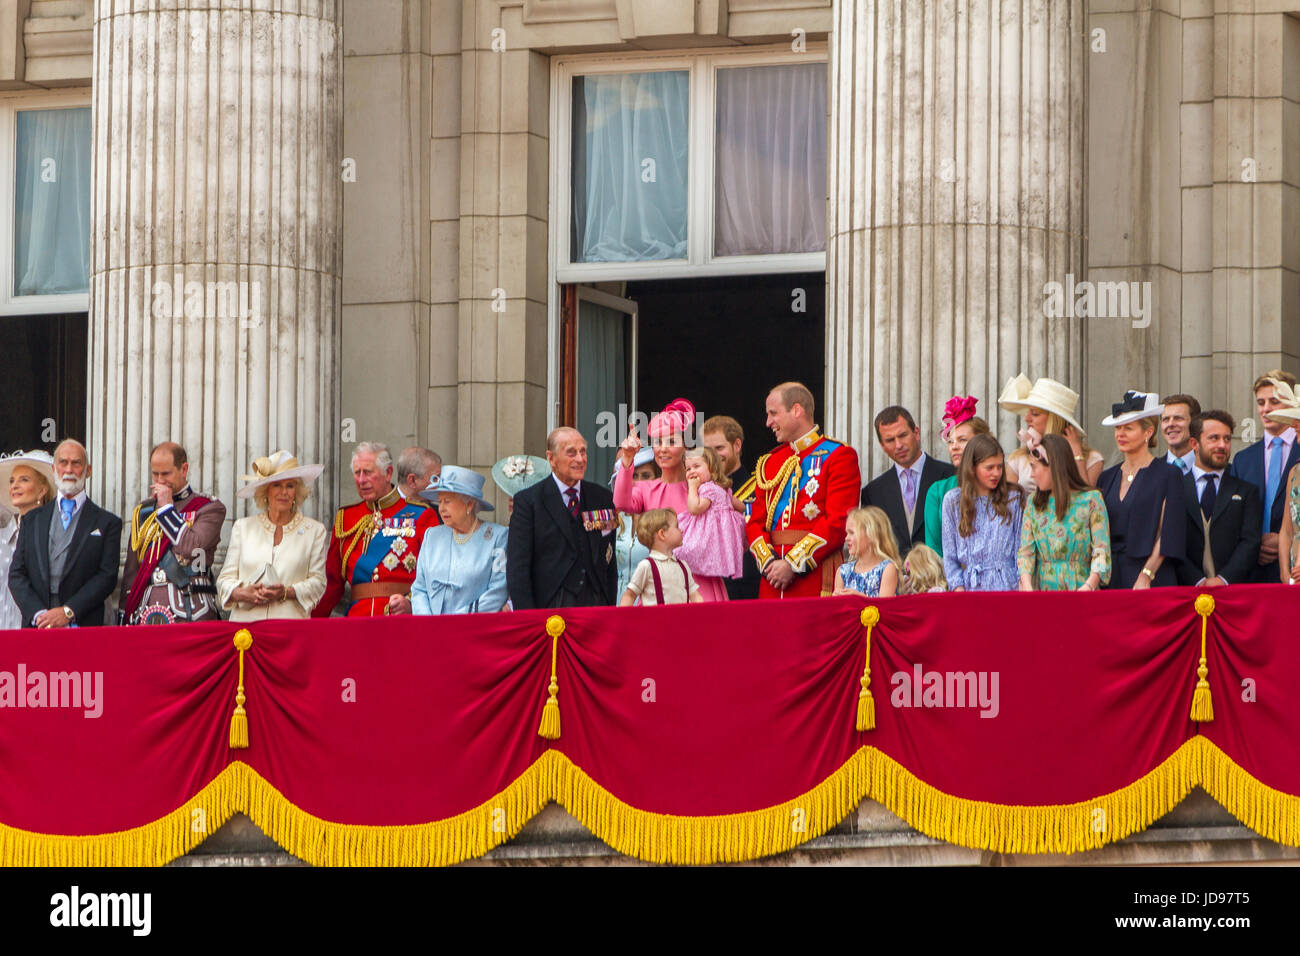 La Reine et les membres de la famille royale se réunissent sur le Buckingham Palace Balcony à la suite de la Trooping The Color Parade, Londres, Royaume-Uni, 2017 Banque D'Images